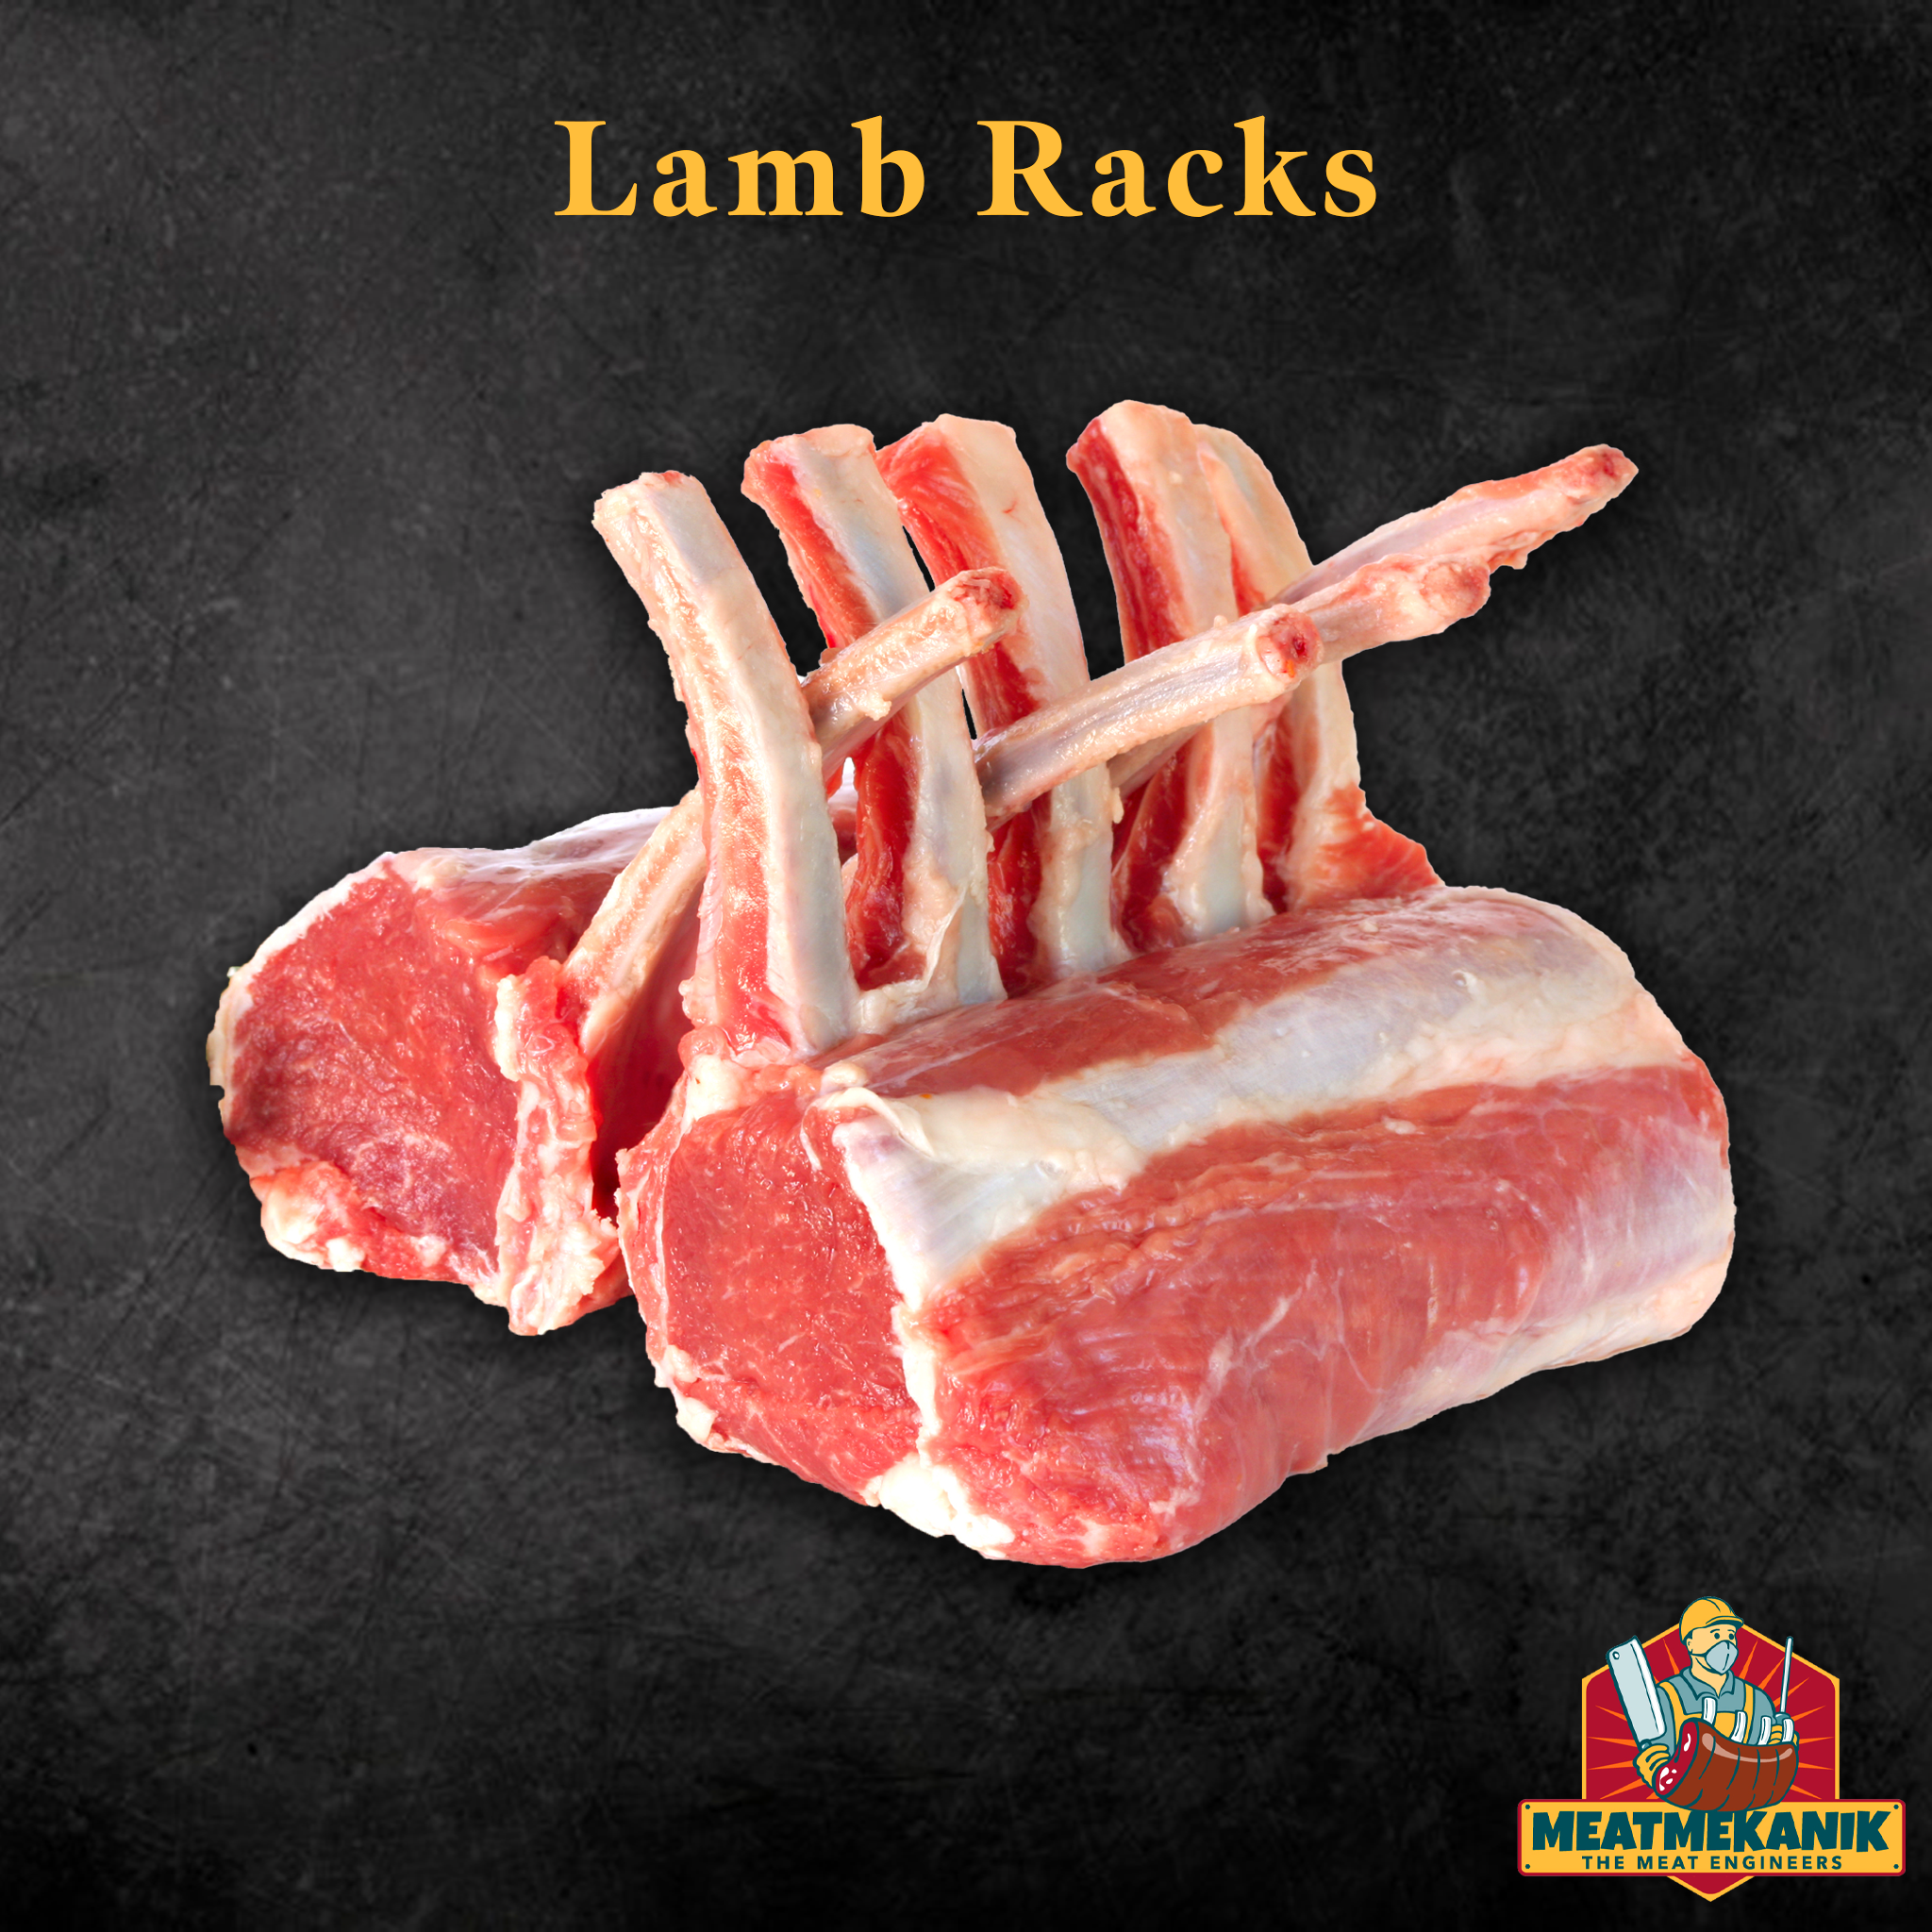 Lamb Racks - Meat Mekanik